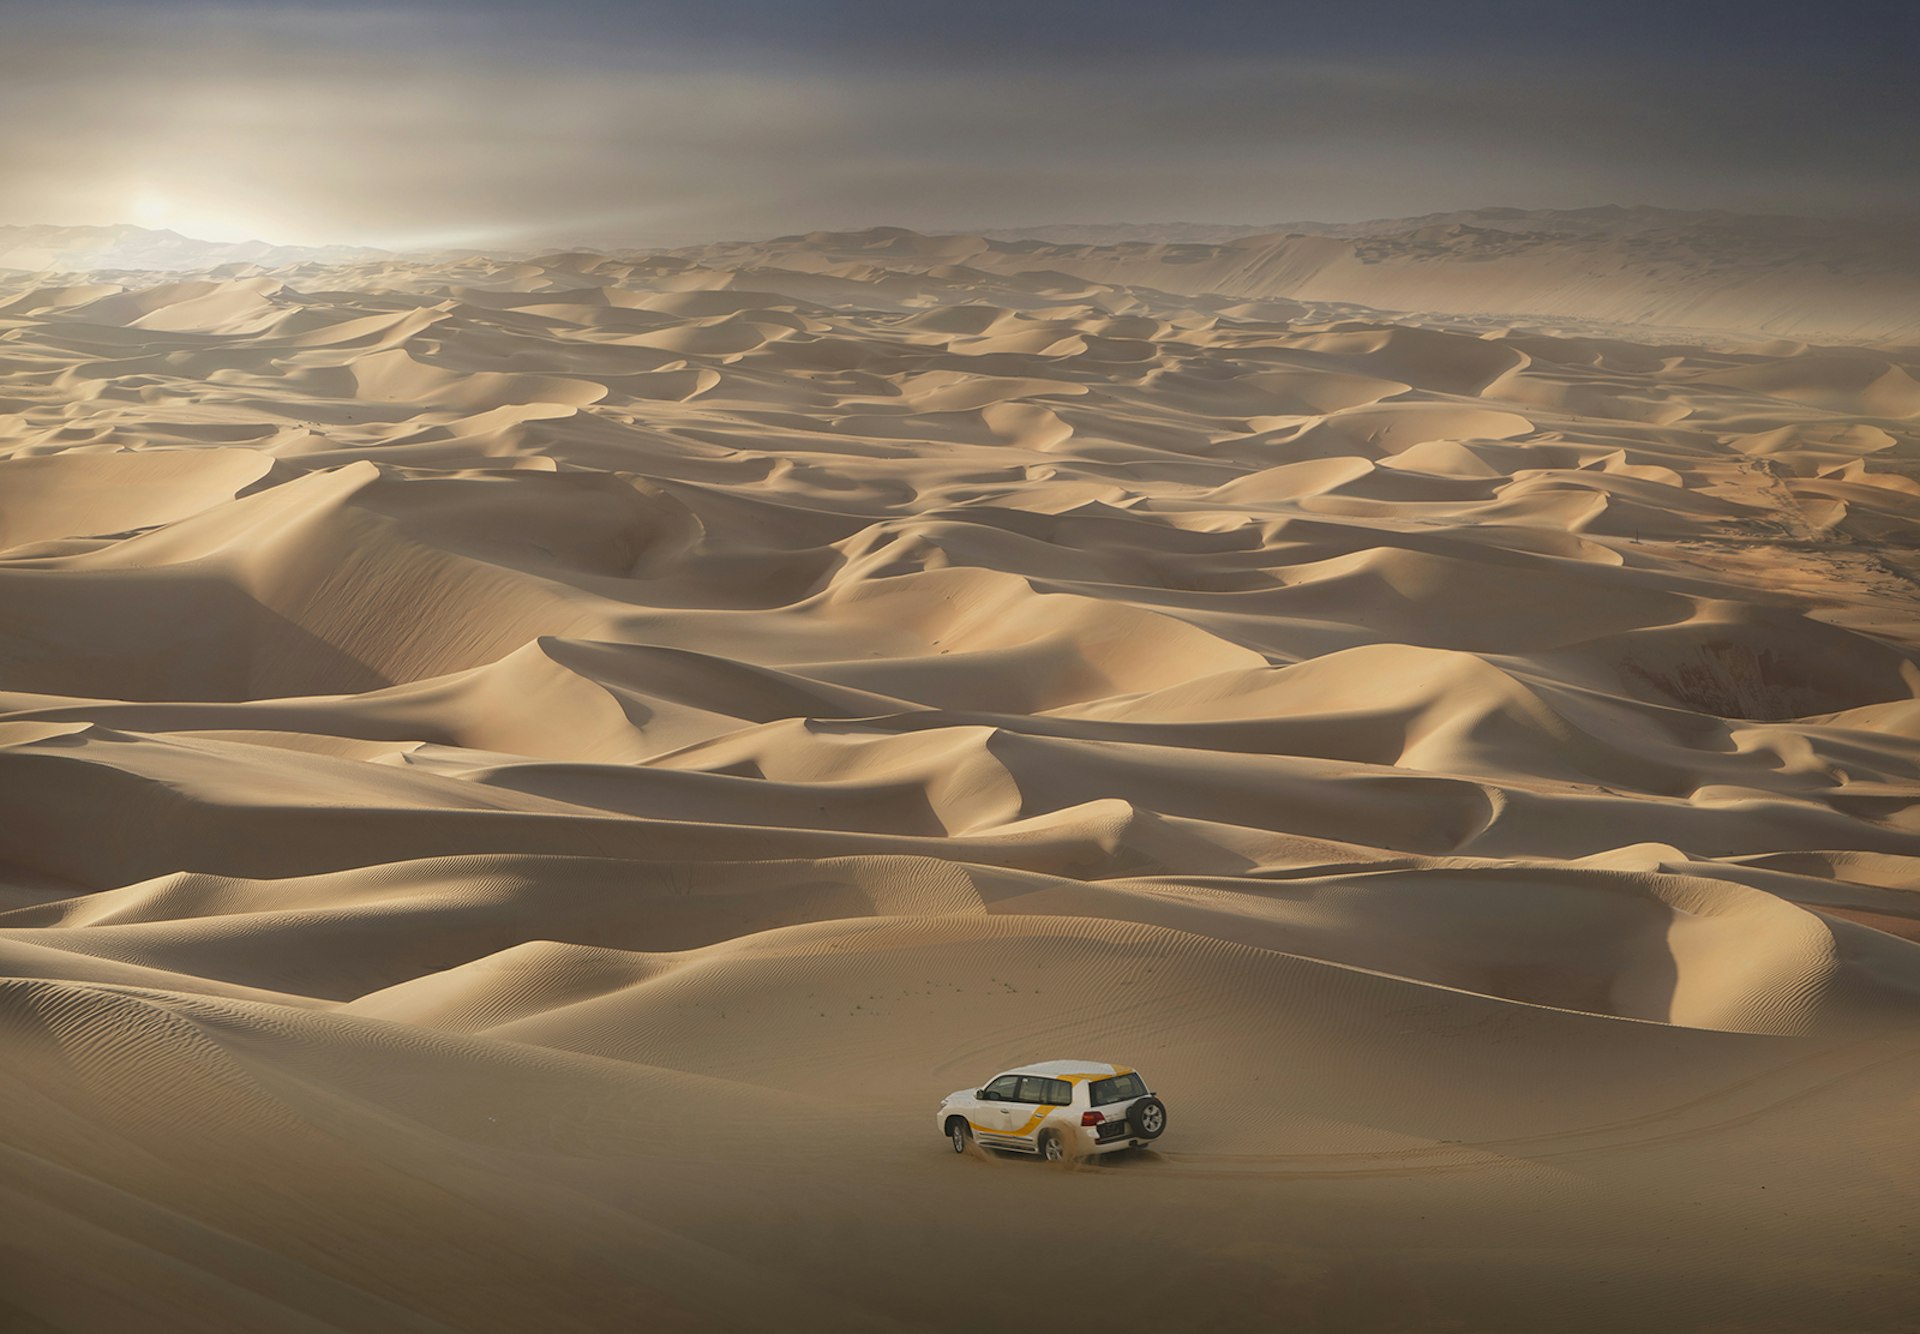 A 4WD in the Empty Quarter, Saudi Arabia